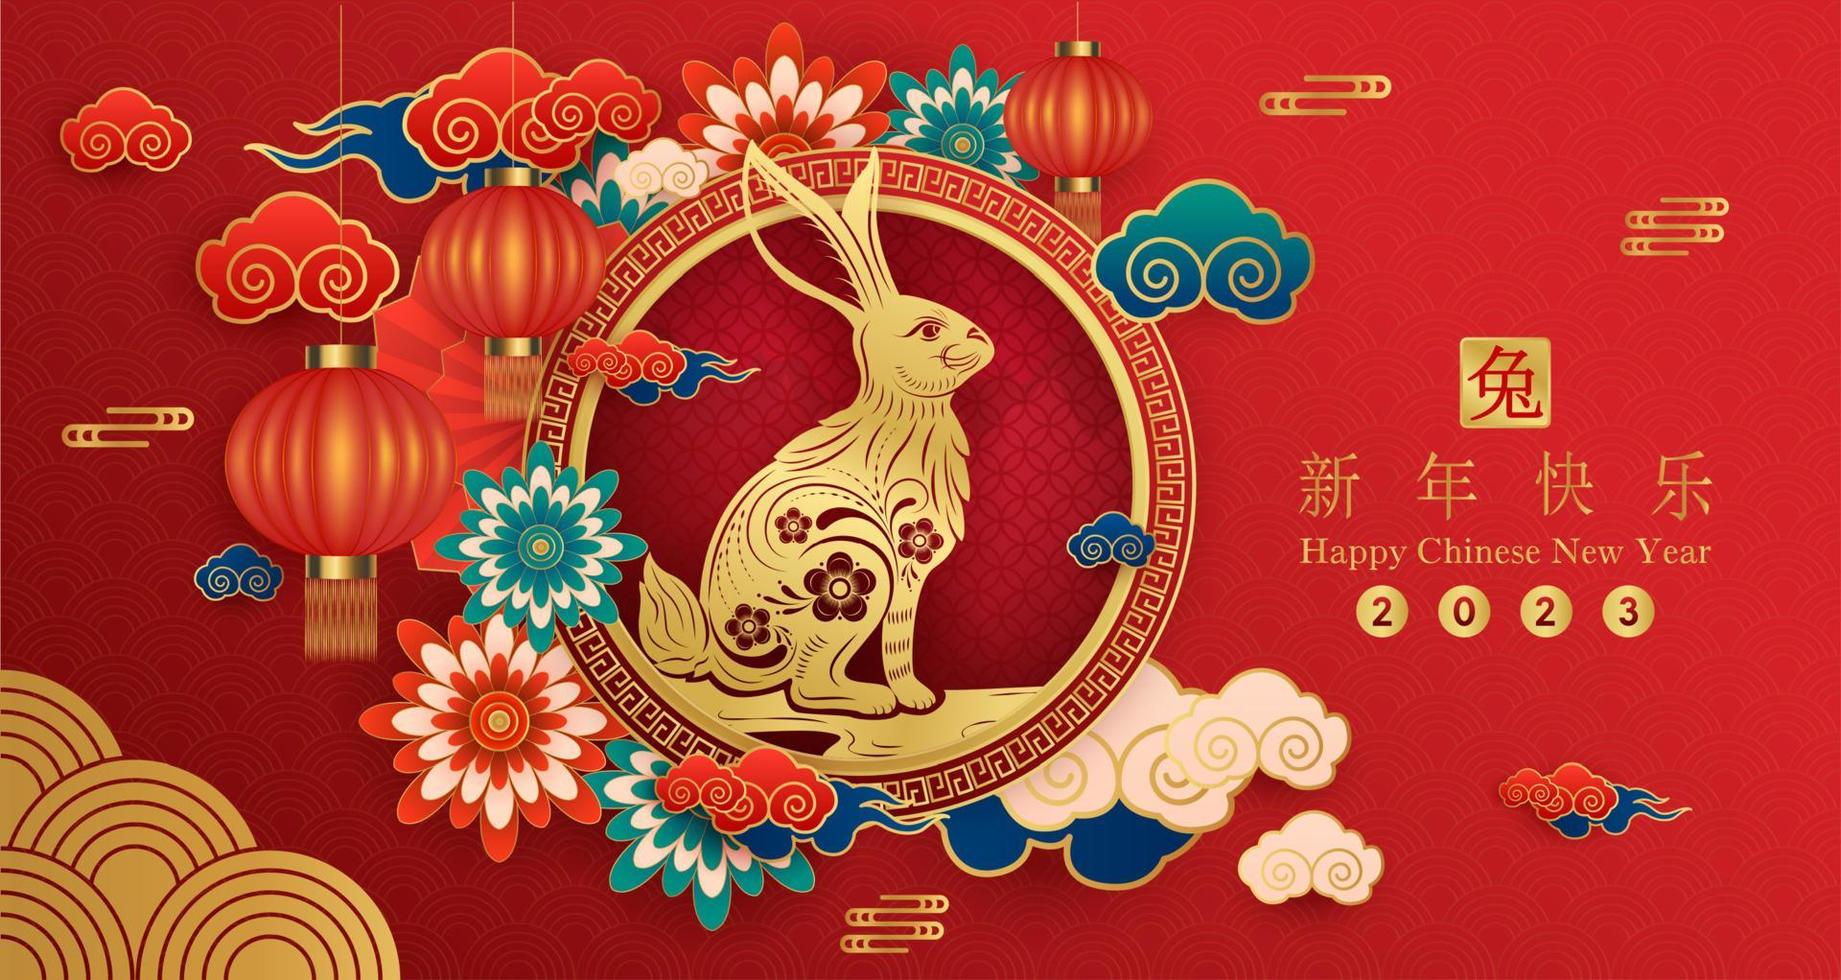 cartão feliz ano novo chinês 2023, signo de coelho em fundo vermelho. elementos asiáticos com estilo de corte de papel de coelho artesanal. tradução chinesa feliz ano novo 2023, ano do coelho. vetor eps10.